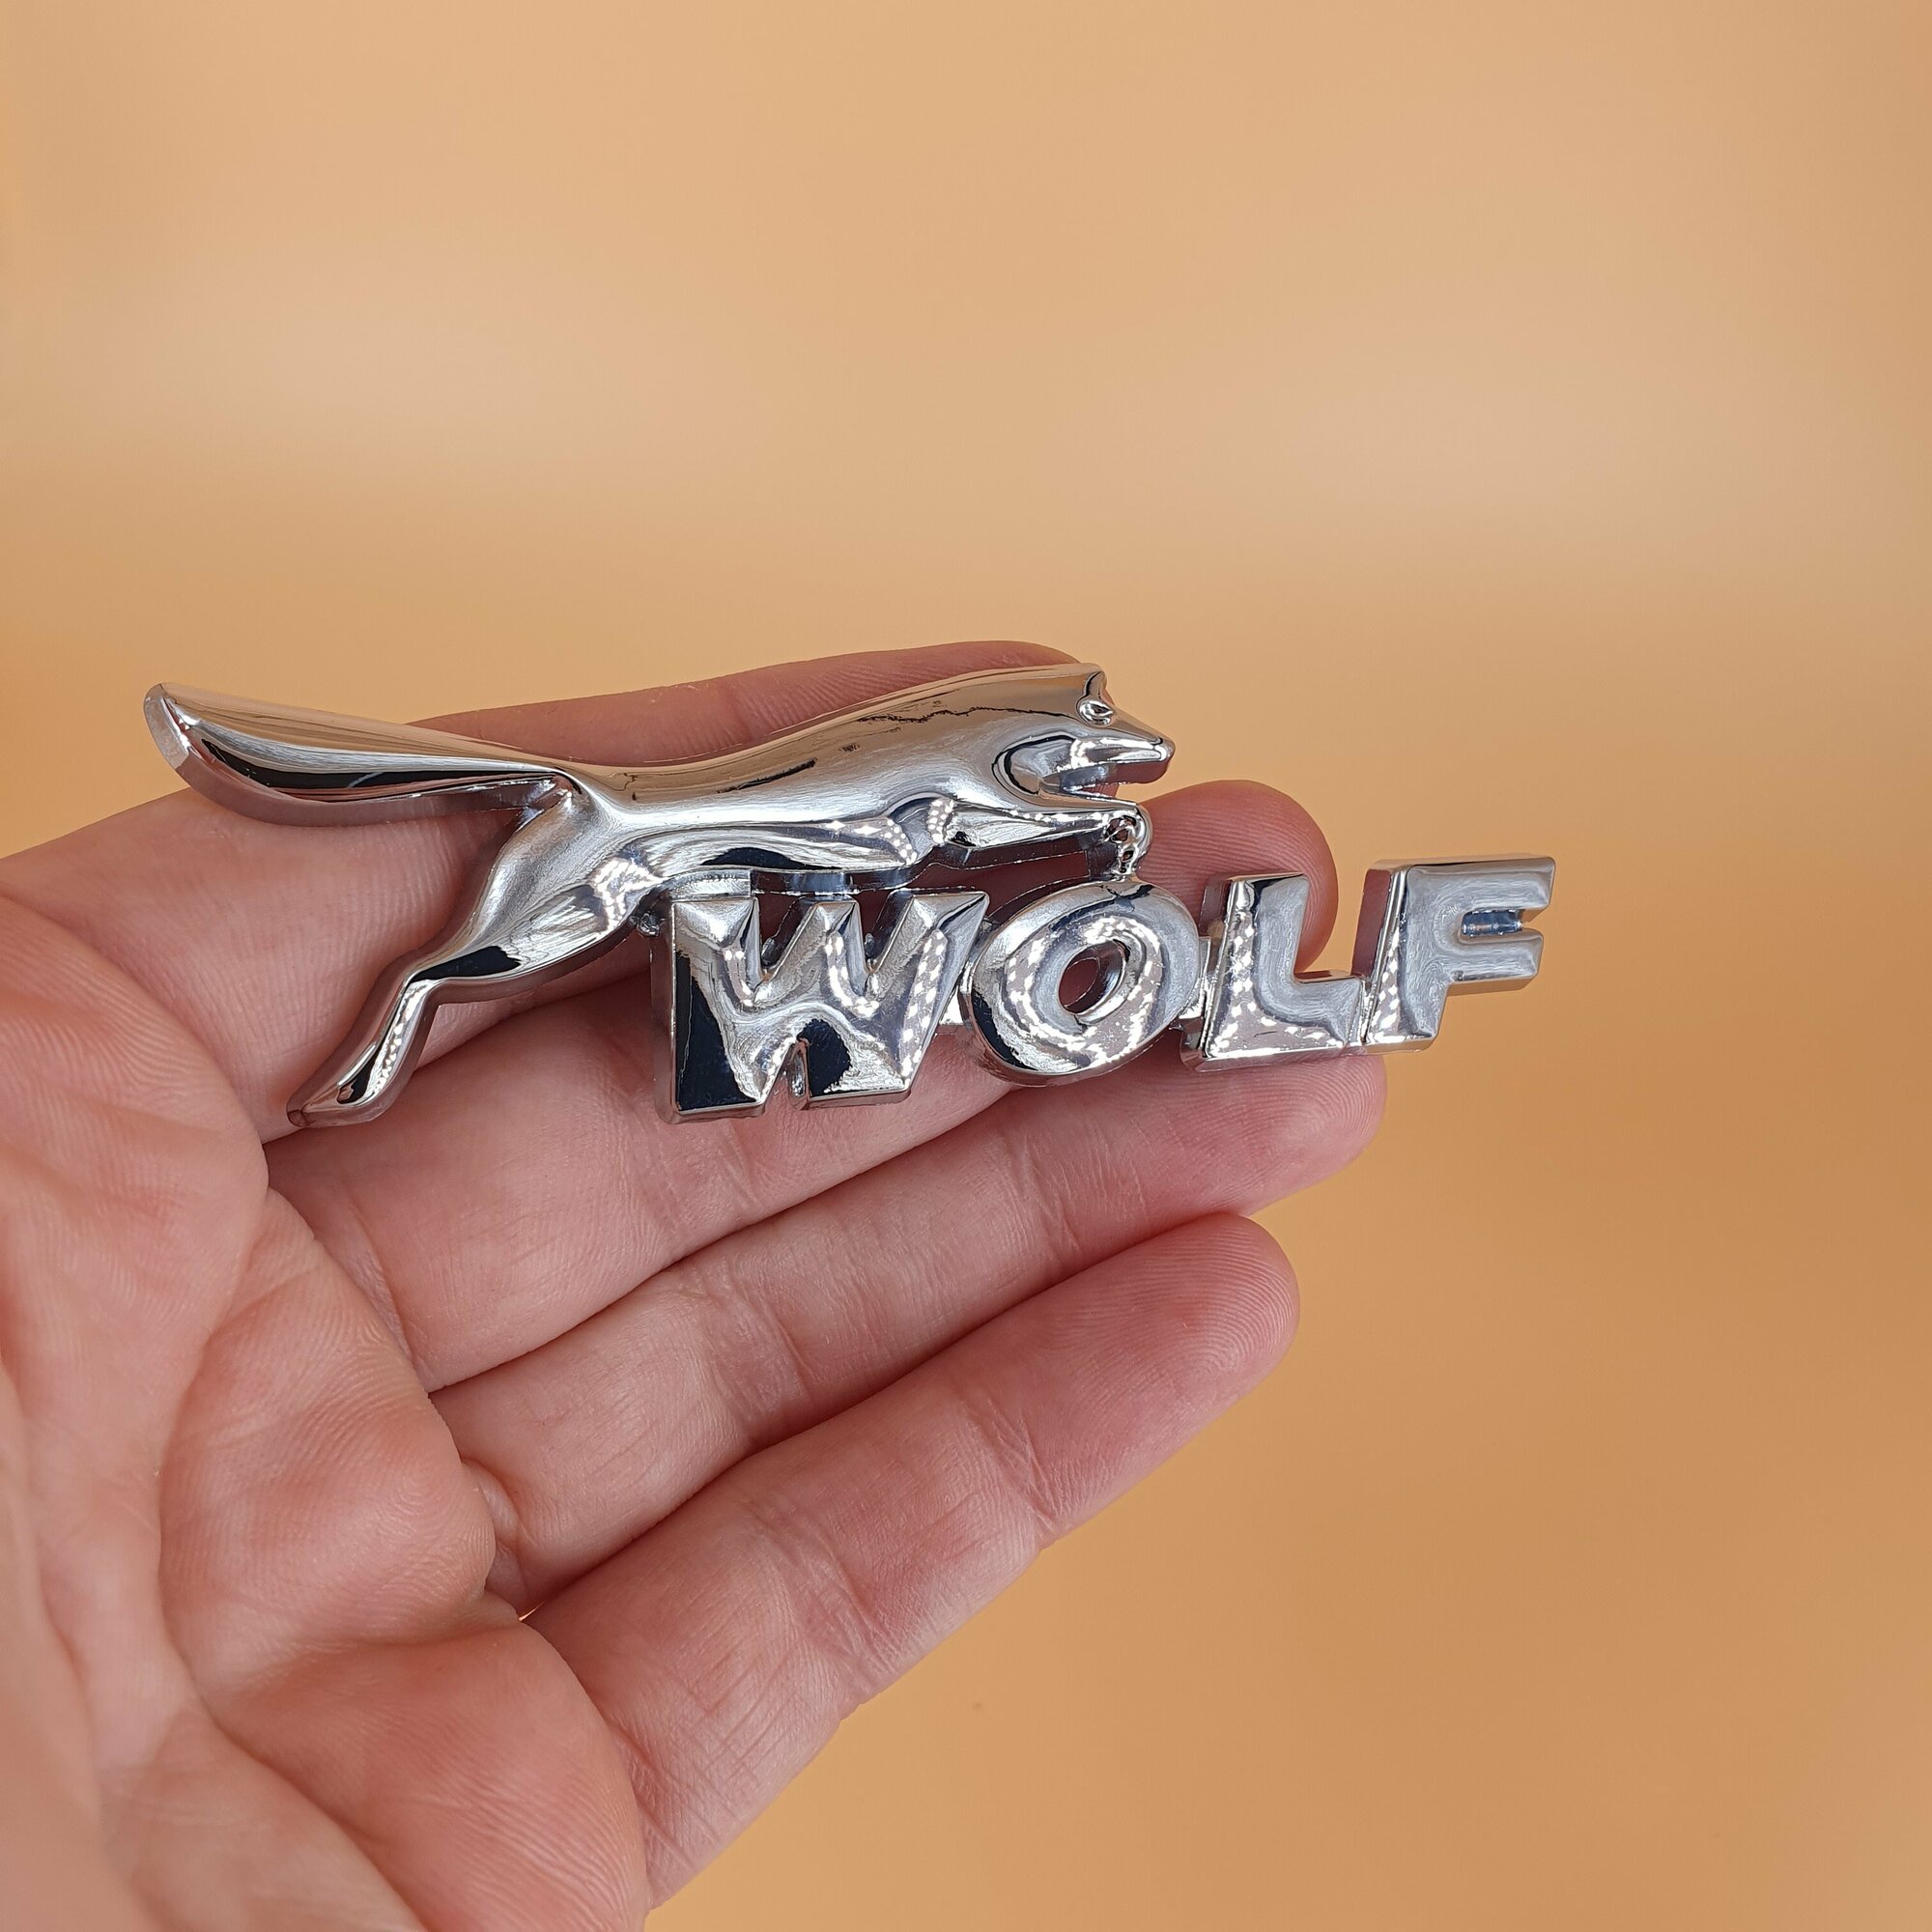 Эмблема Wolf Волк металлическая для авто (значок, шильдик, логотип) хромированная